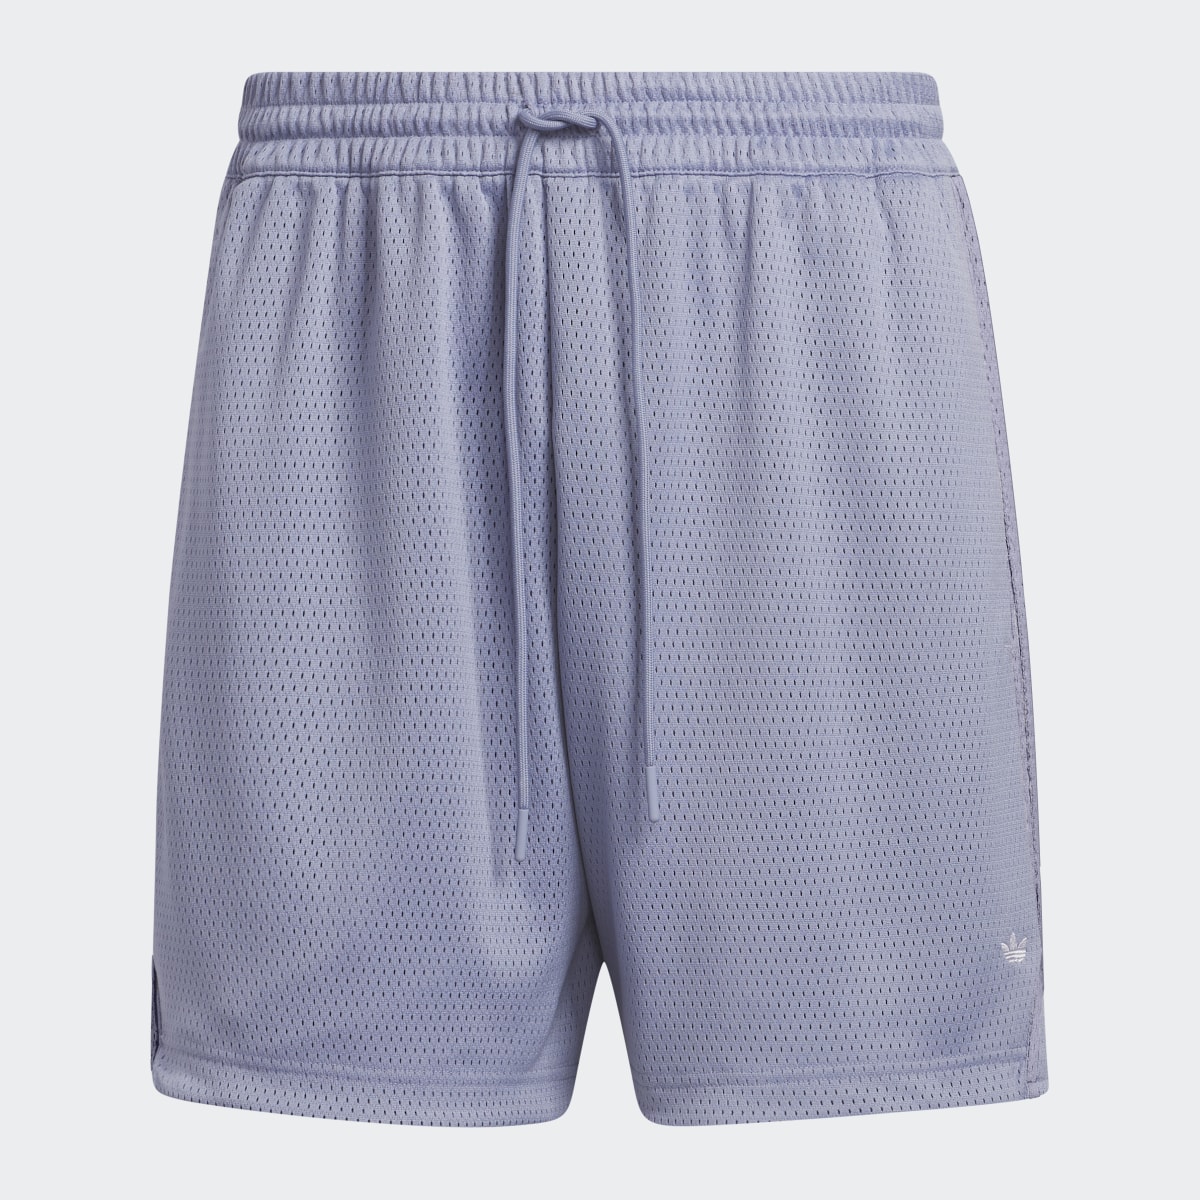 Adidas Basketball Mesh Shorts. 4